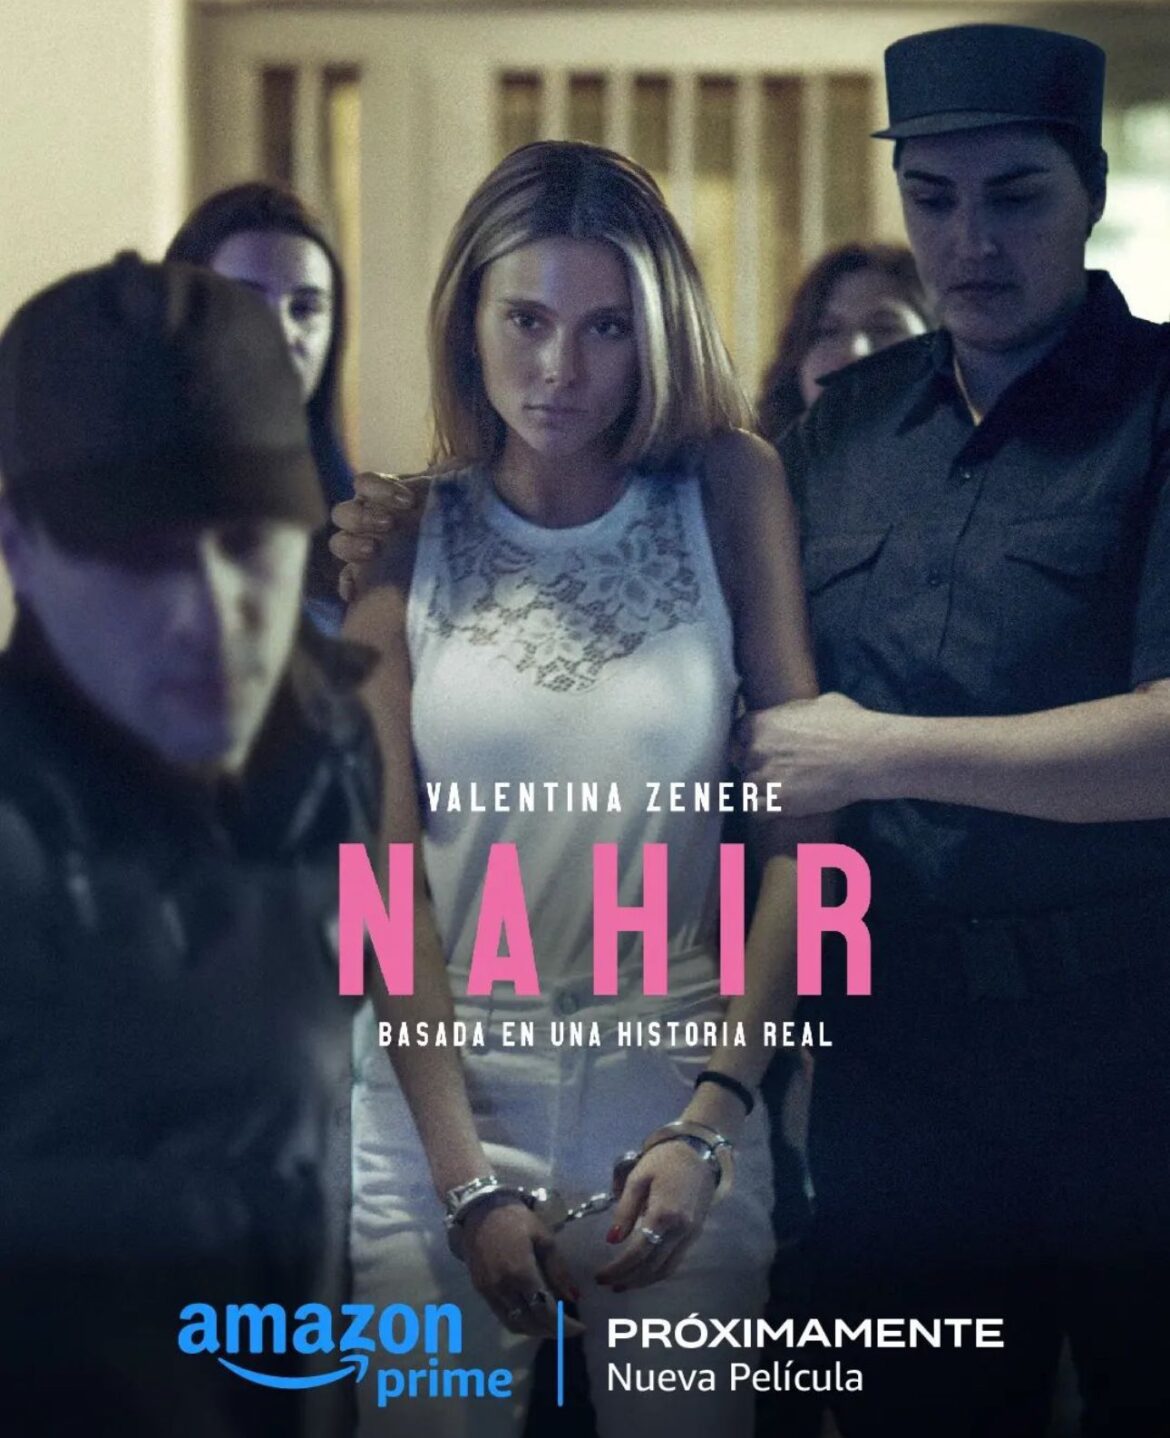 Primer poster de “Nahir” la película que se estrenará en Amazon Prime